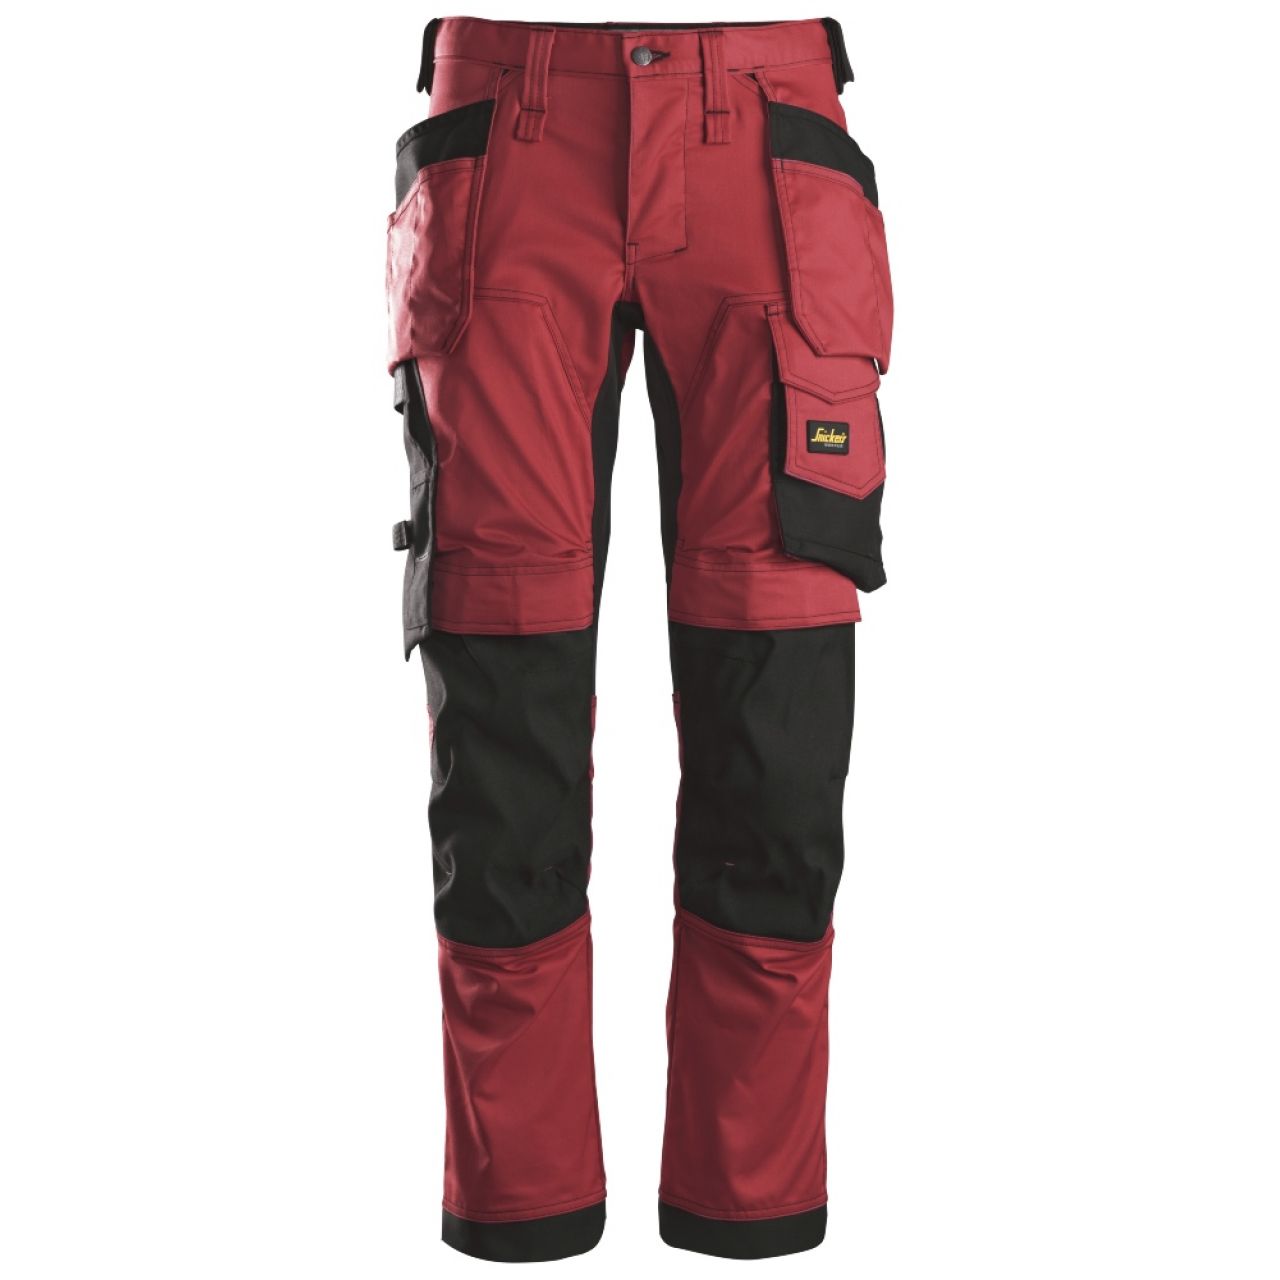 6241 Pantalones largos de trabajo elásticos con bolsillos flotantes AllroundWork rojo-negro talla 158